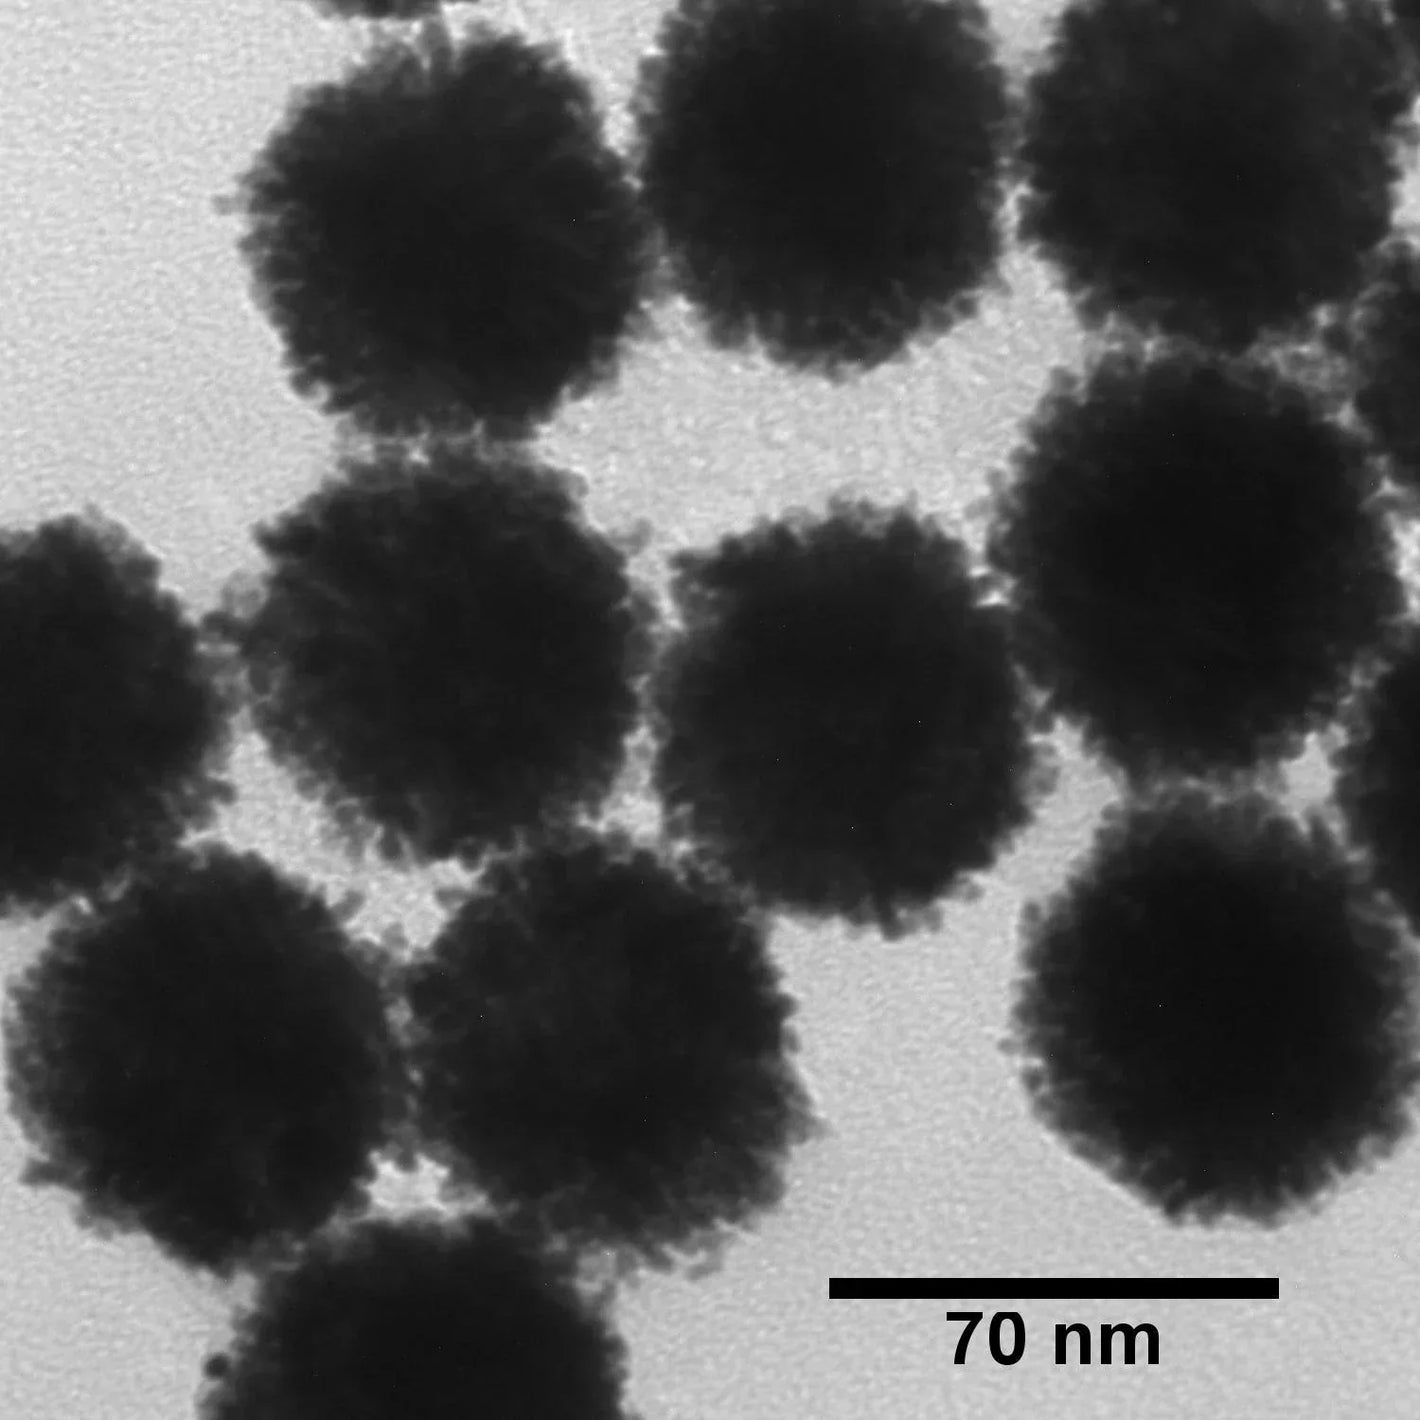 Platinum Nanoparticles